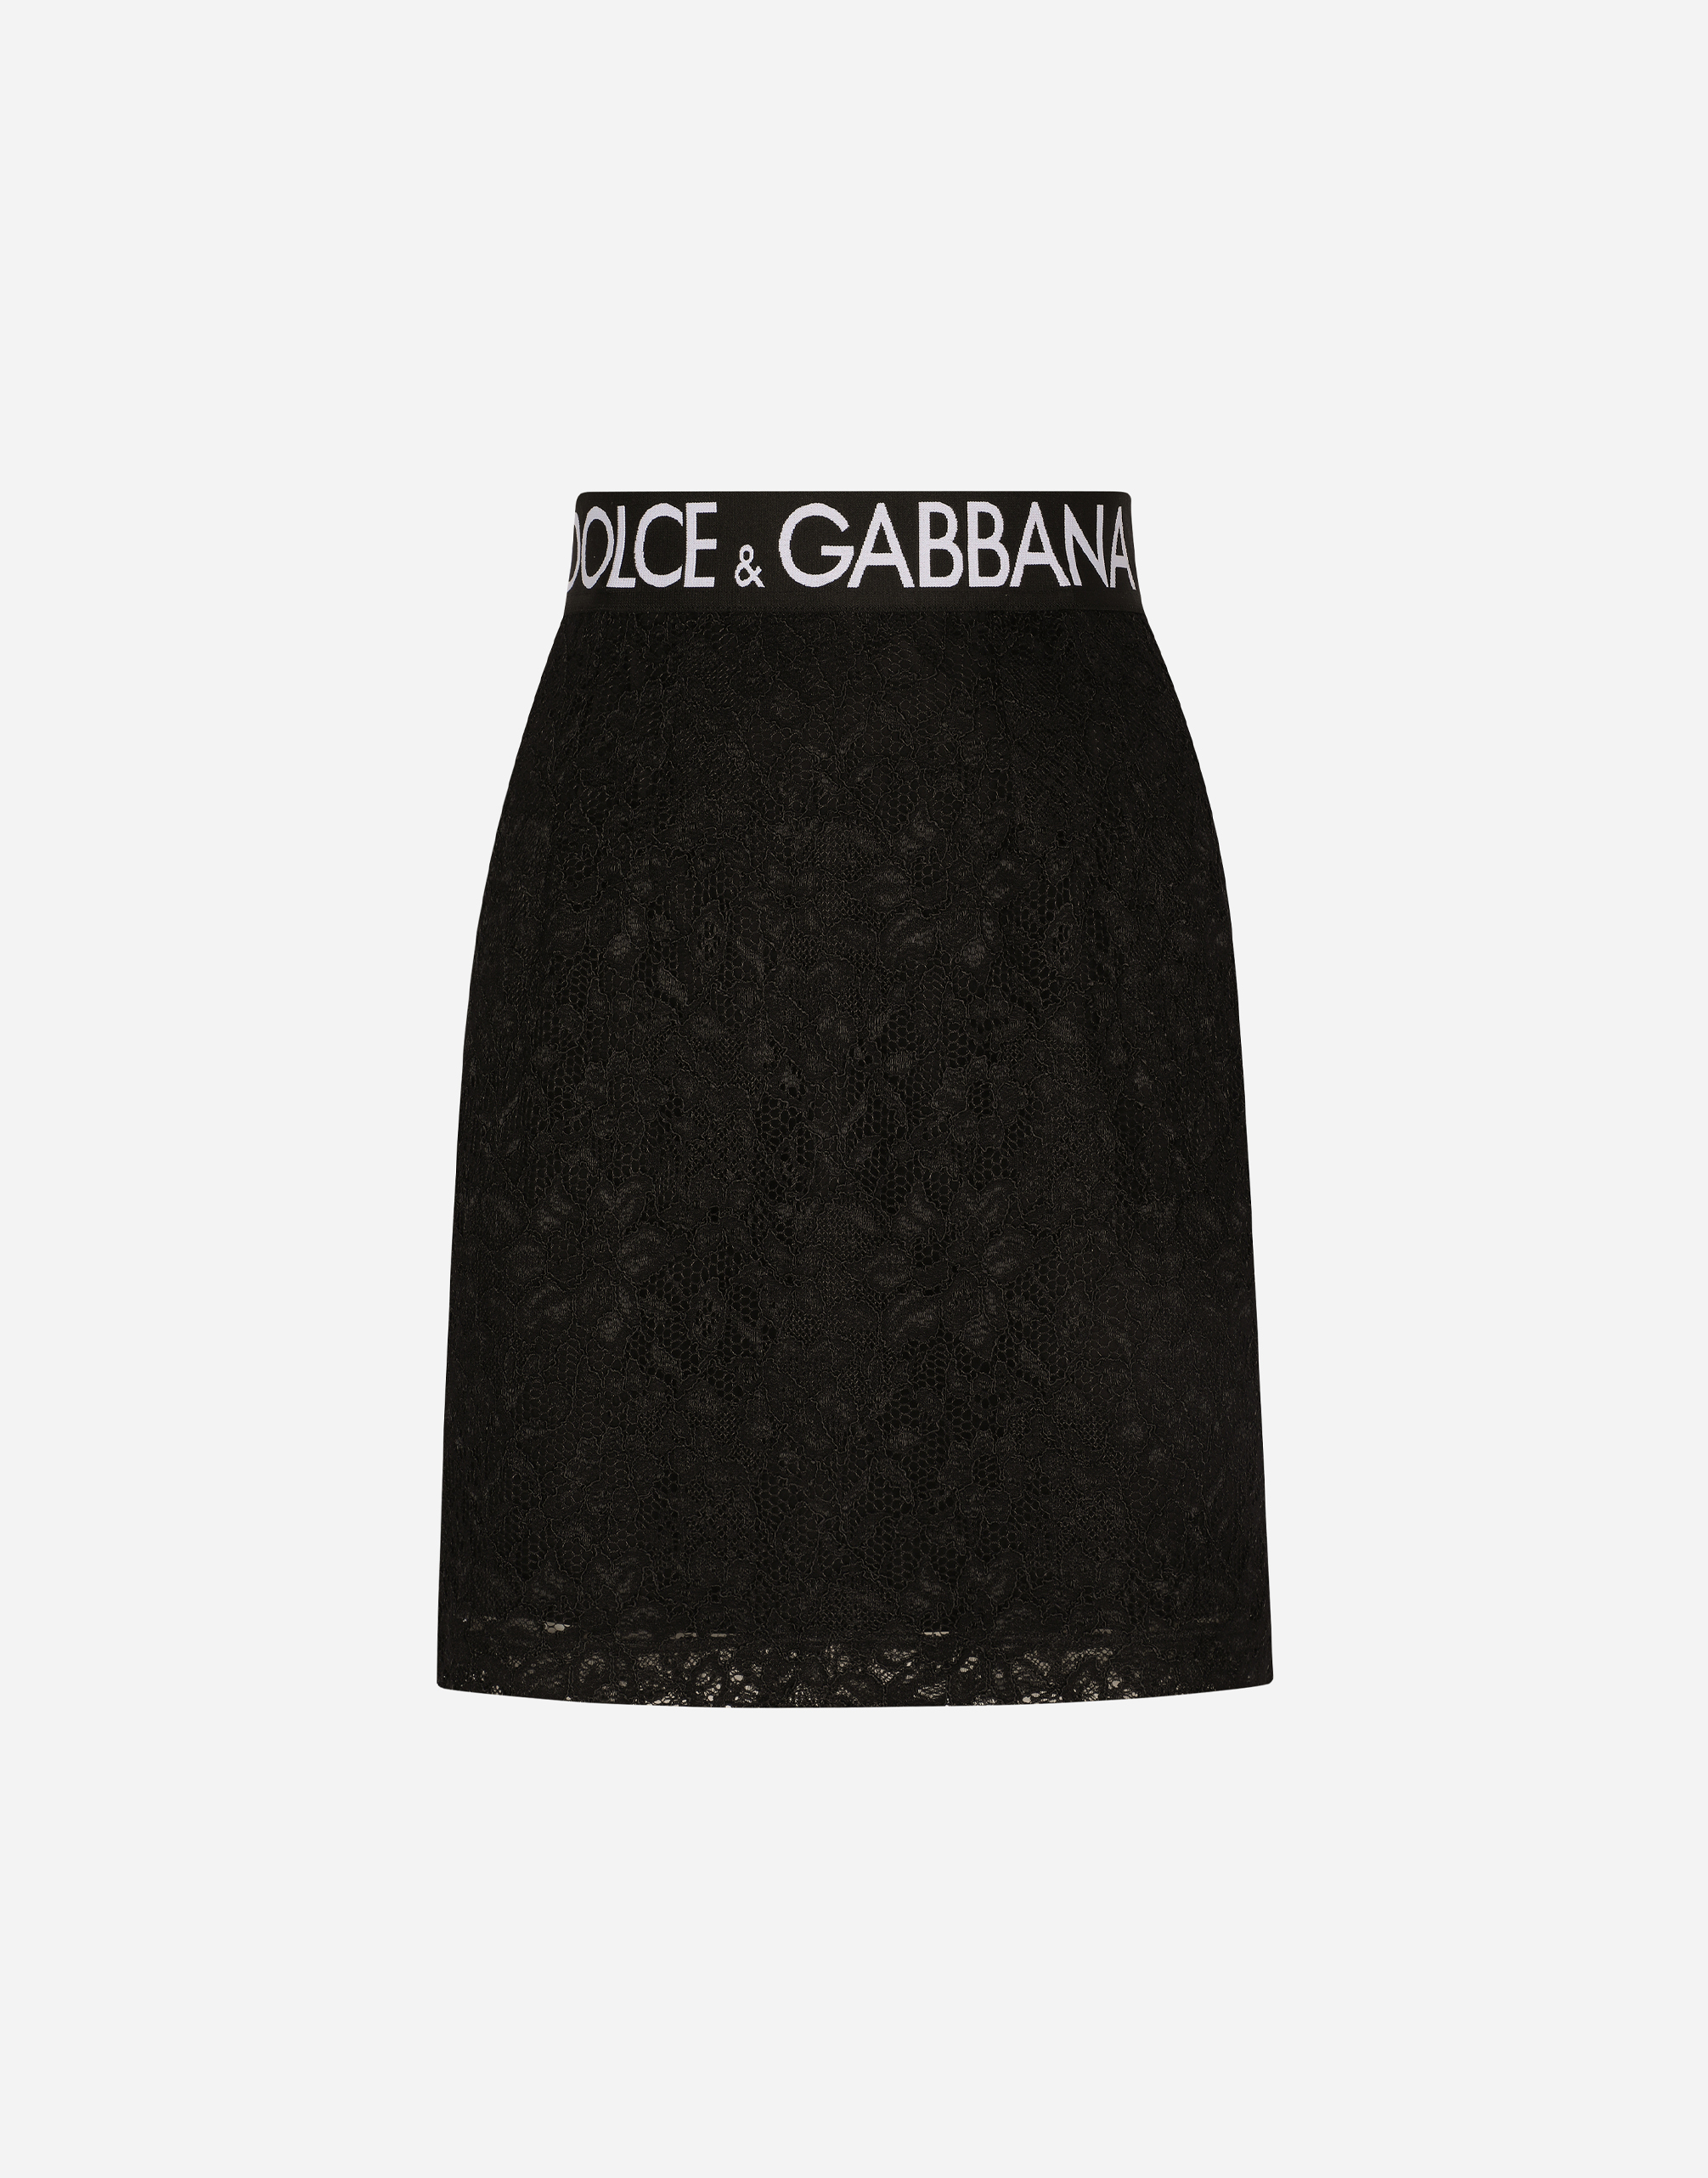 Dolce & Gabbana Lace Miniskirt In Black